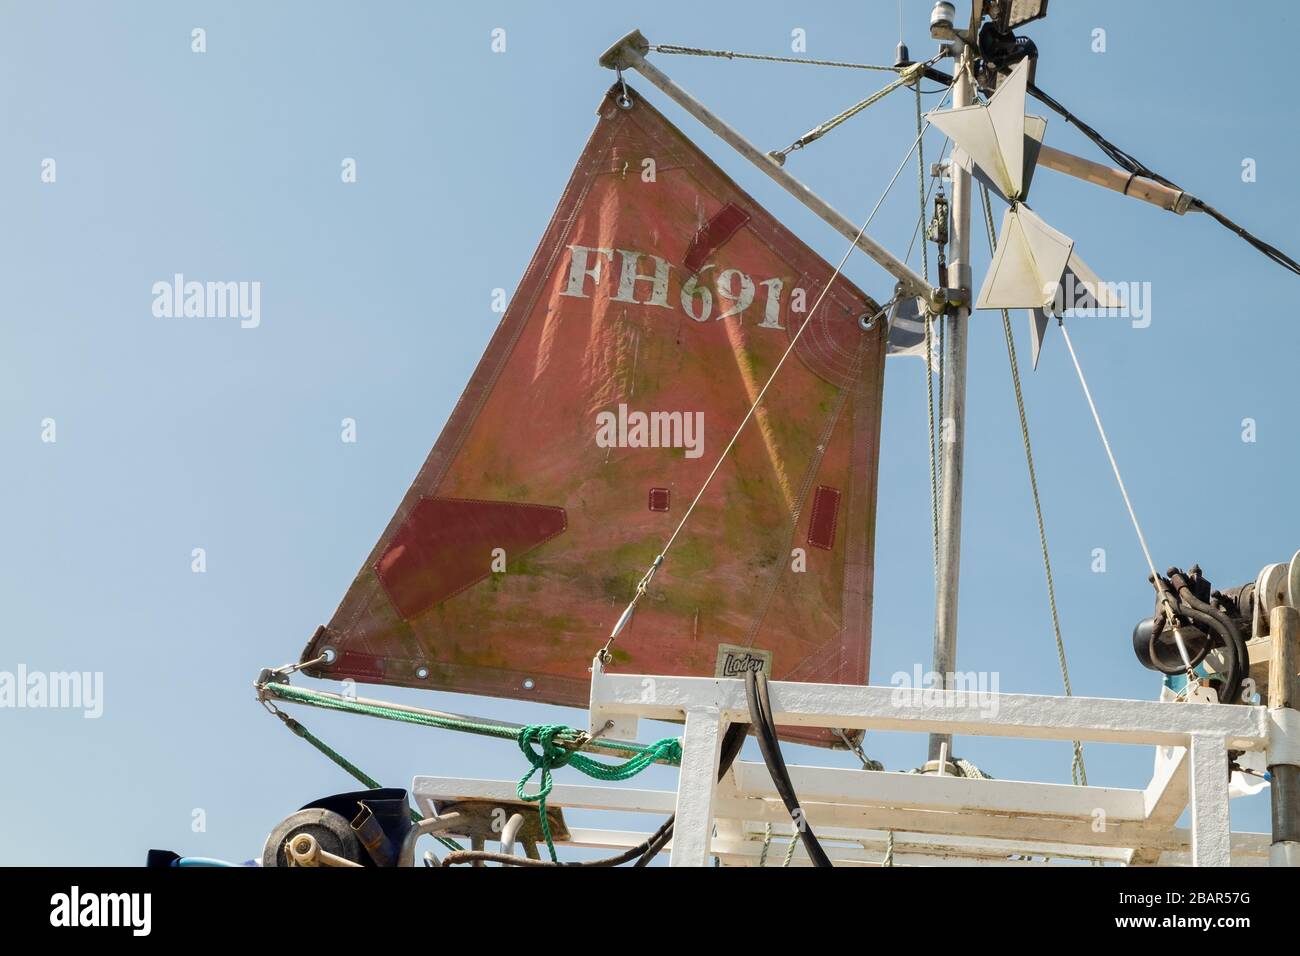 Kleines schmutziges Rot gepatcht, repariertes Segel und Mast auf traditionellem Fischerboot in dem kleinen Fischerdorf Cadgwith, Cornwall, England, Großbritannien. Stockfoto